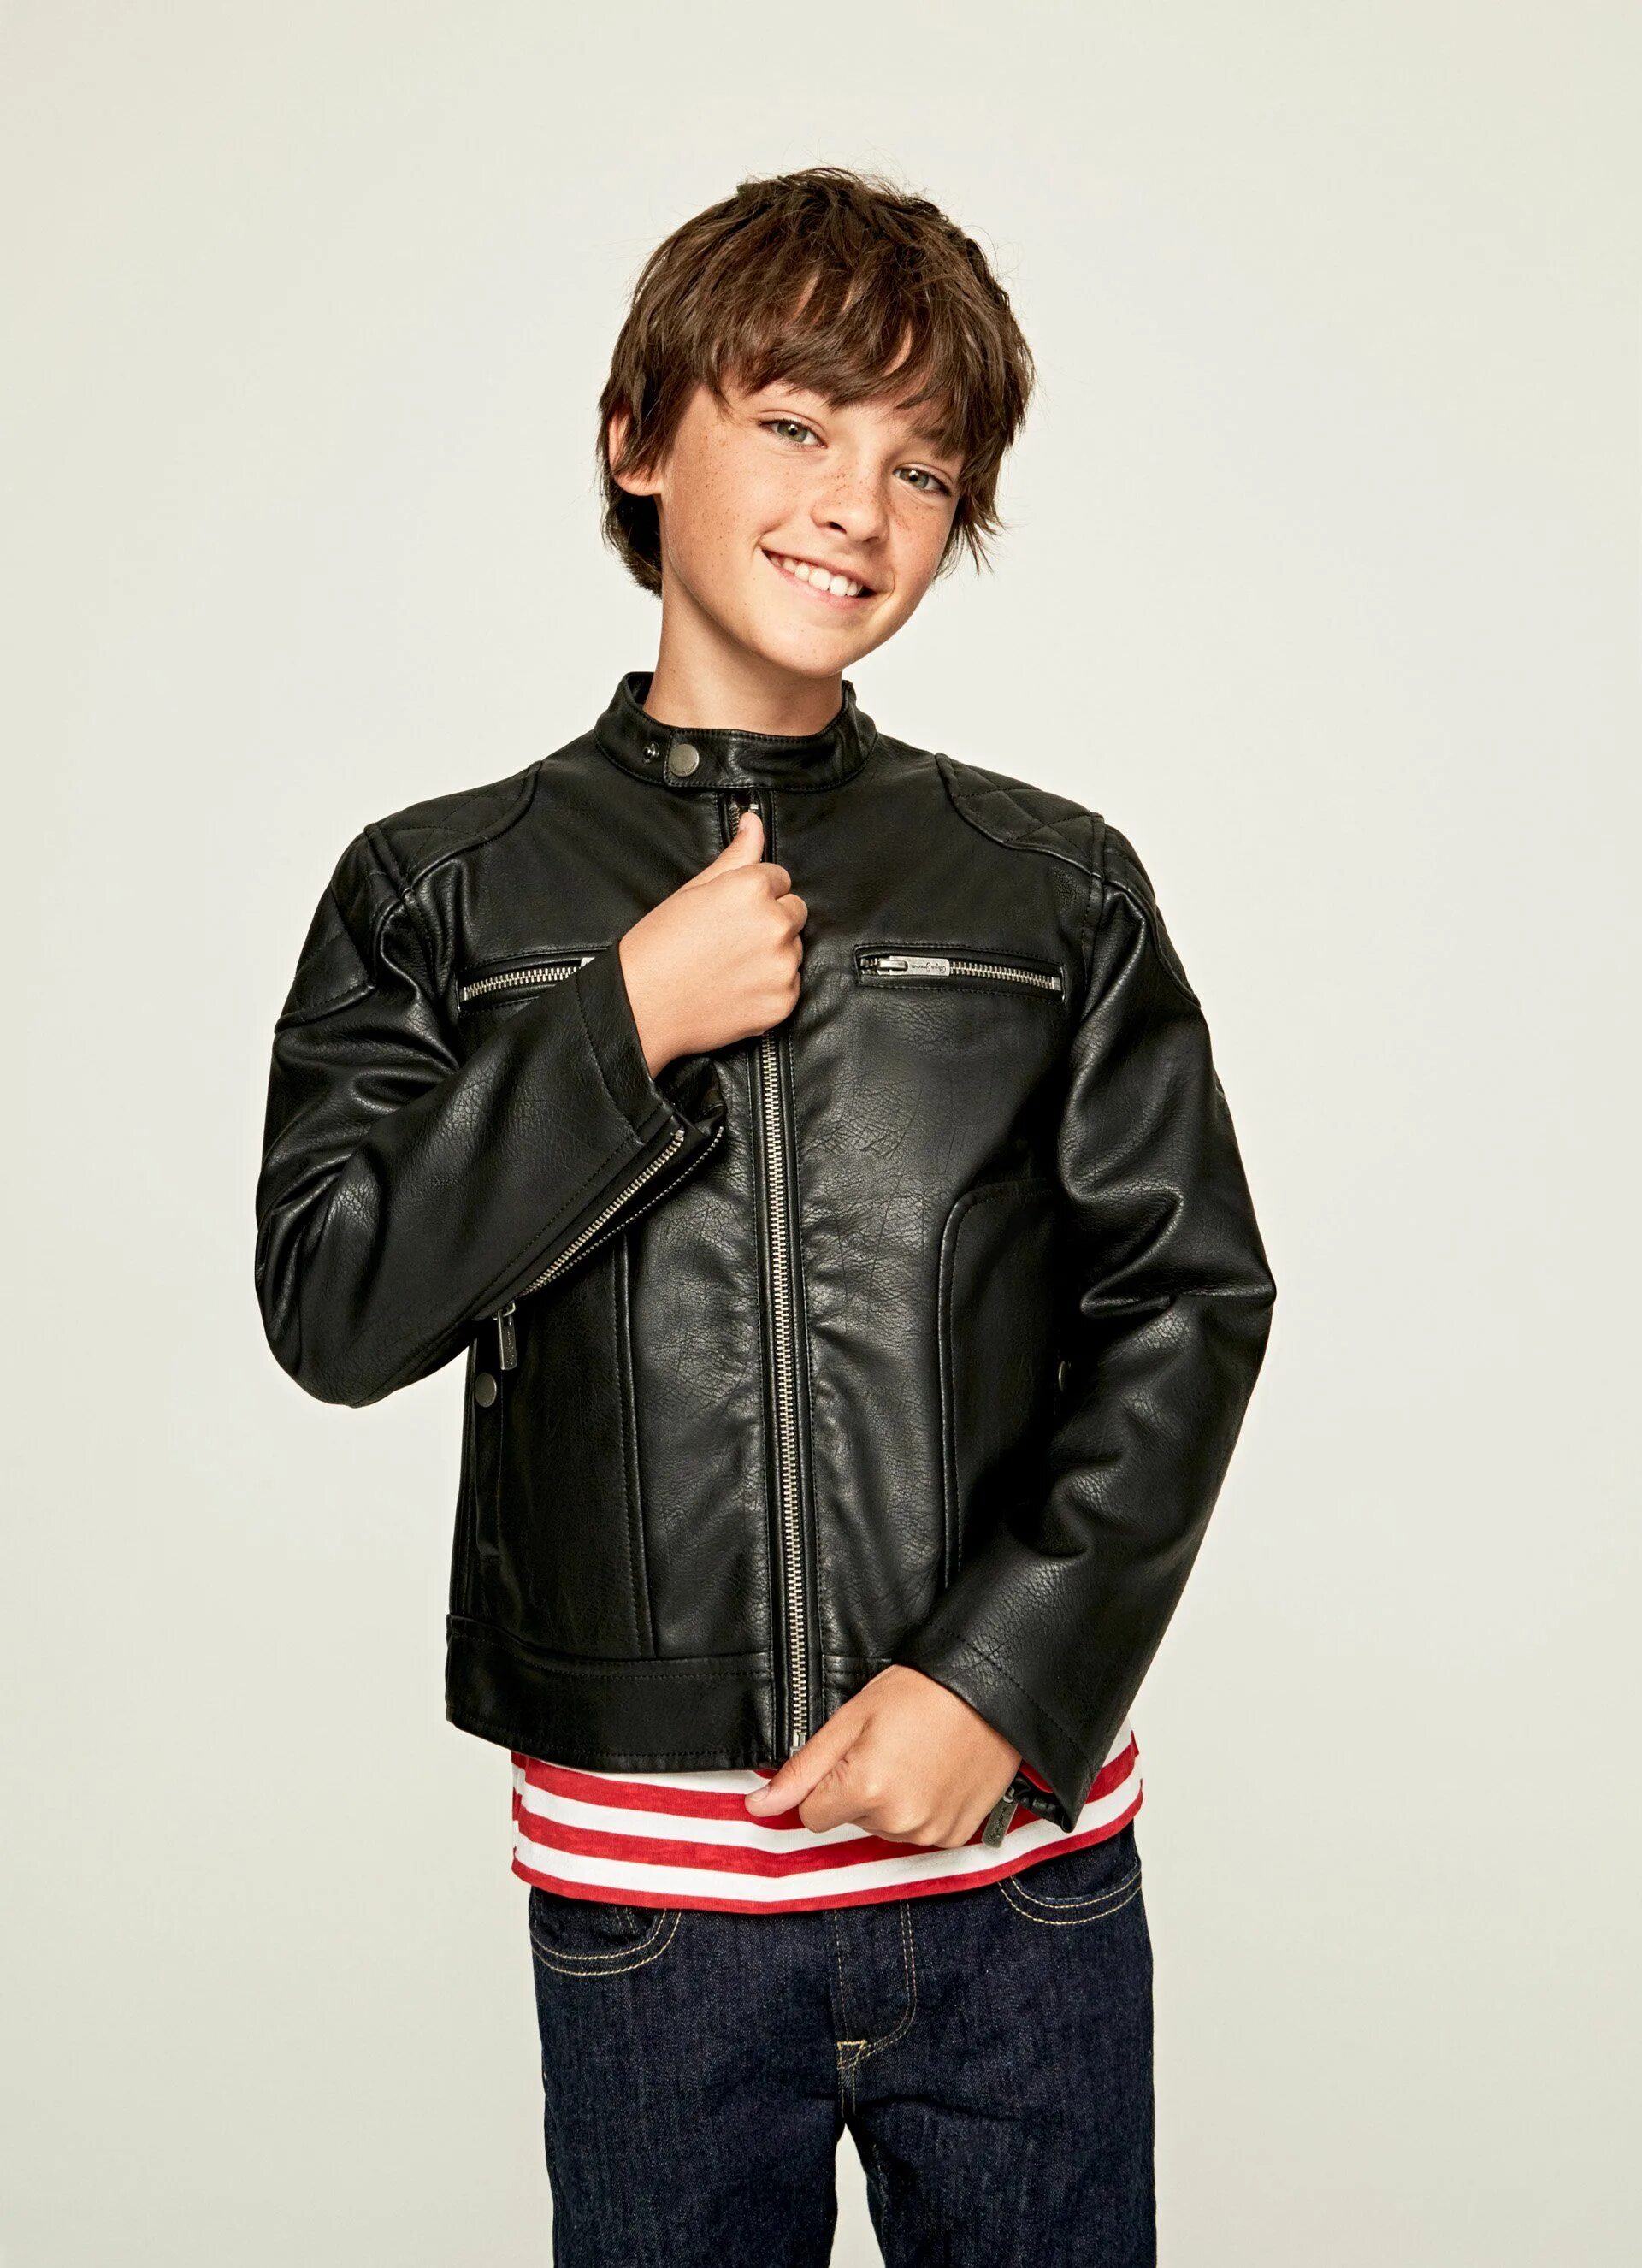 Куртка мальчику 13 лет. Pepe Jeans Leather Jacket. Мальчик в кожаной куртке. Кожаная куртка для мальчика 14 лет. Мальчики в коже.